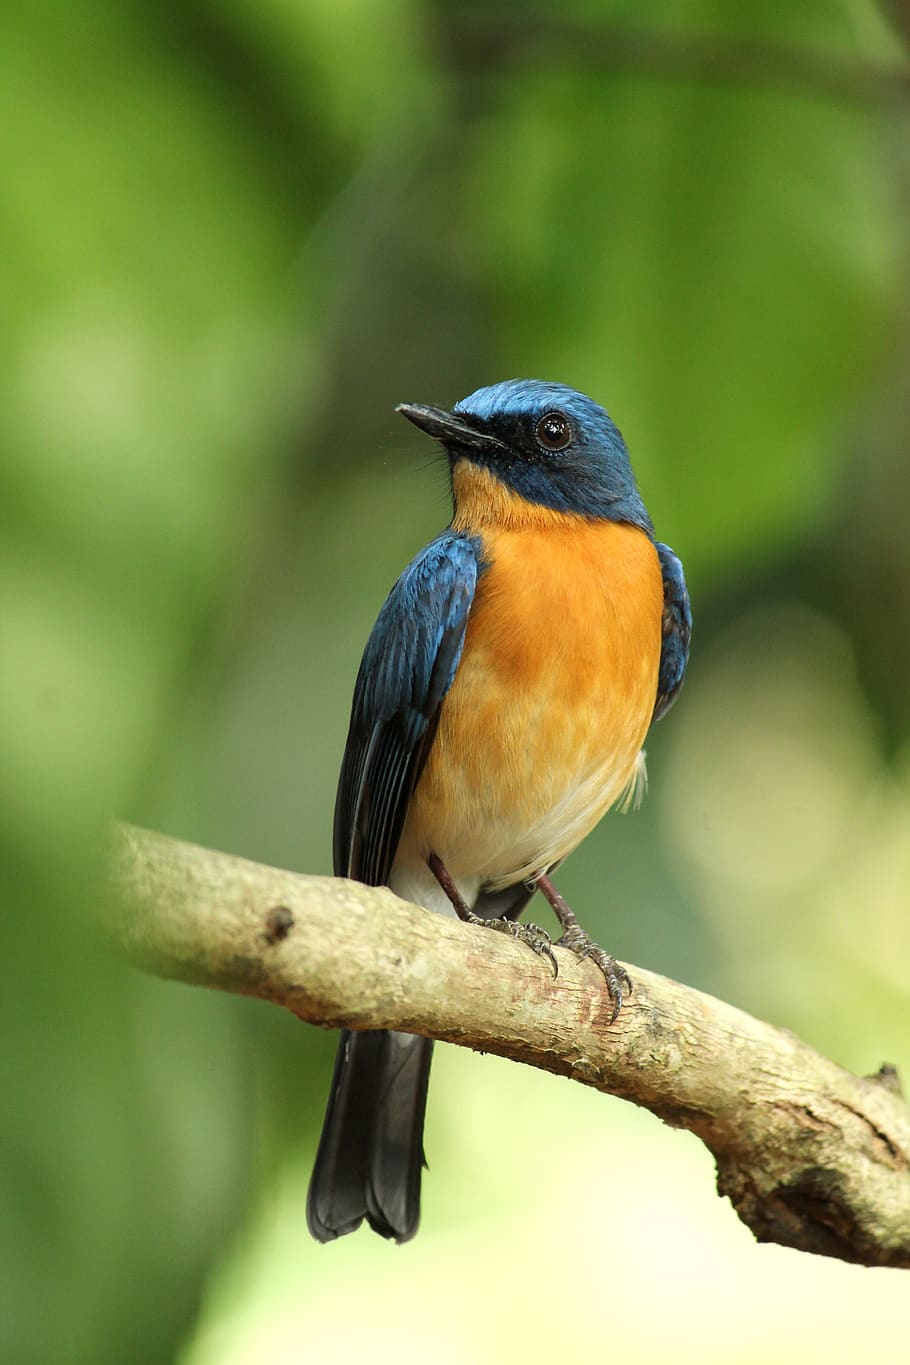 kerala, india, tickell's blue flycatcher, bird, wildlife, animal, outdoors, wild, feather, beak